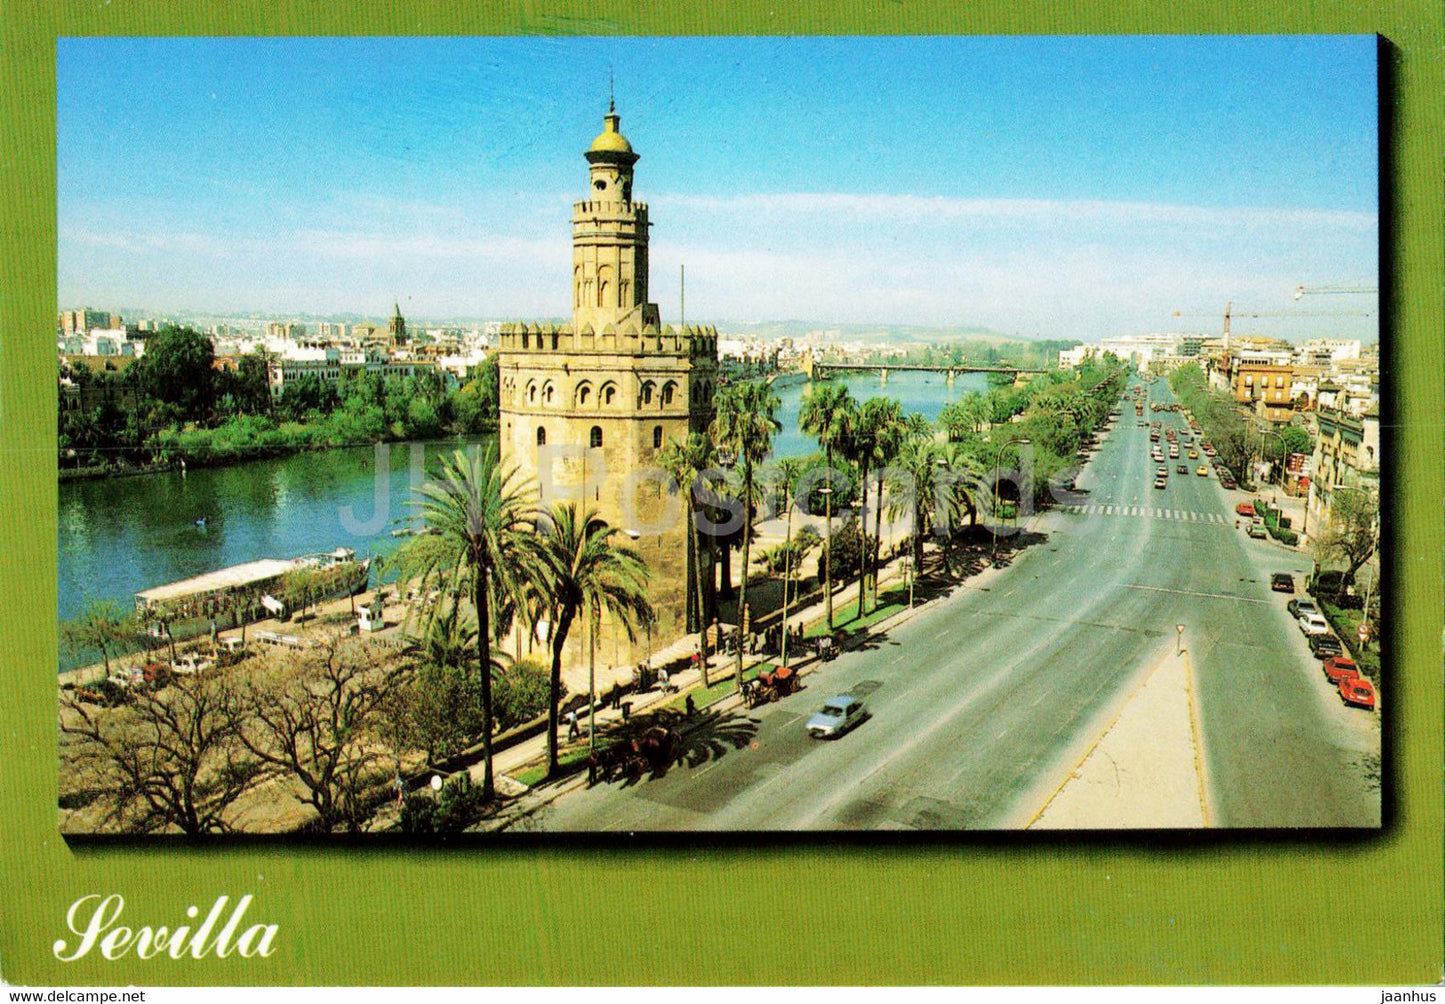 Sevilla - La Torre del Oro - Vista General - view - 1002 - 1997 - Spain - used - JH Postcards